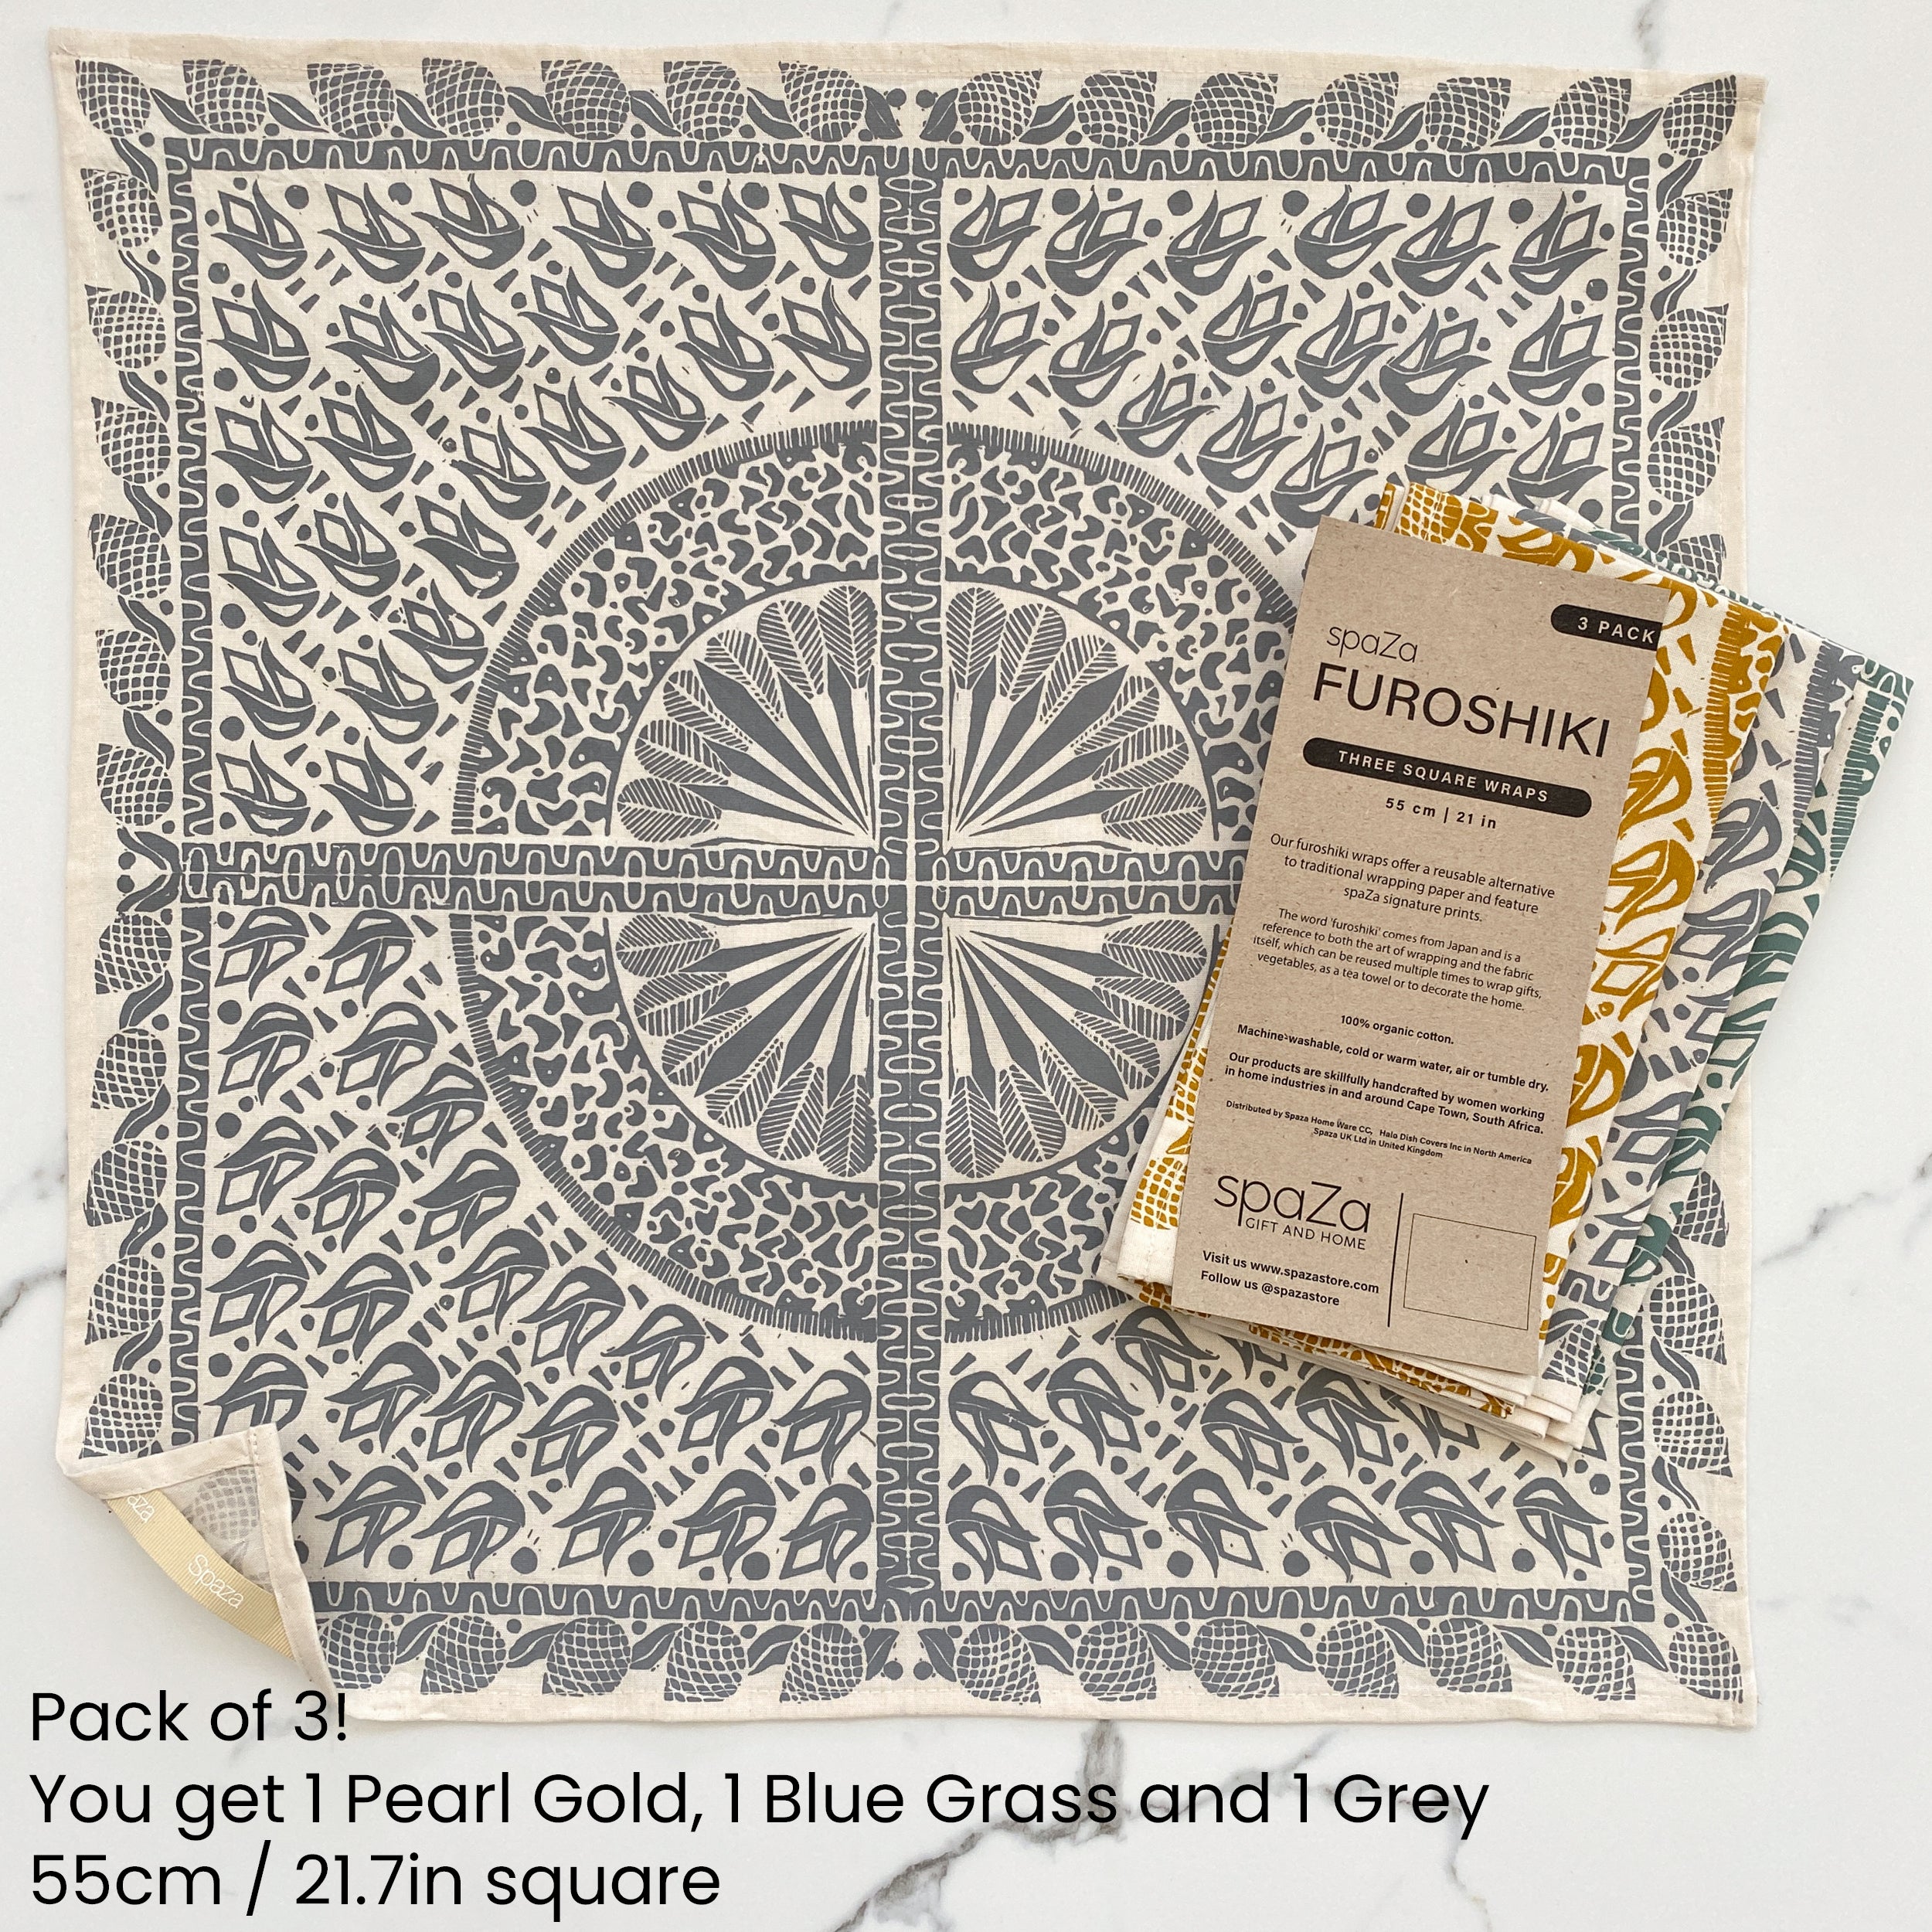 Furoshiki Set of 3 Safari Print | fabric cloth for folding, wrapping, decor and gifting